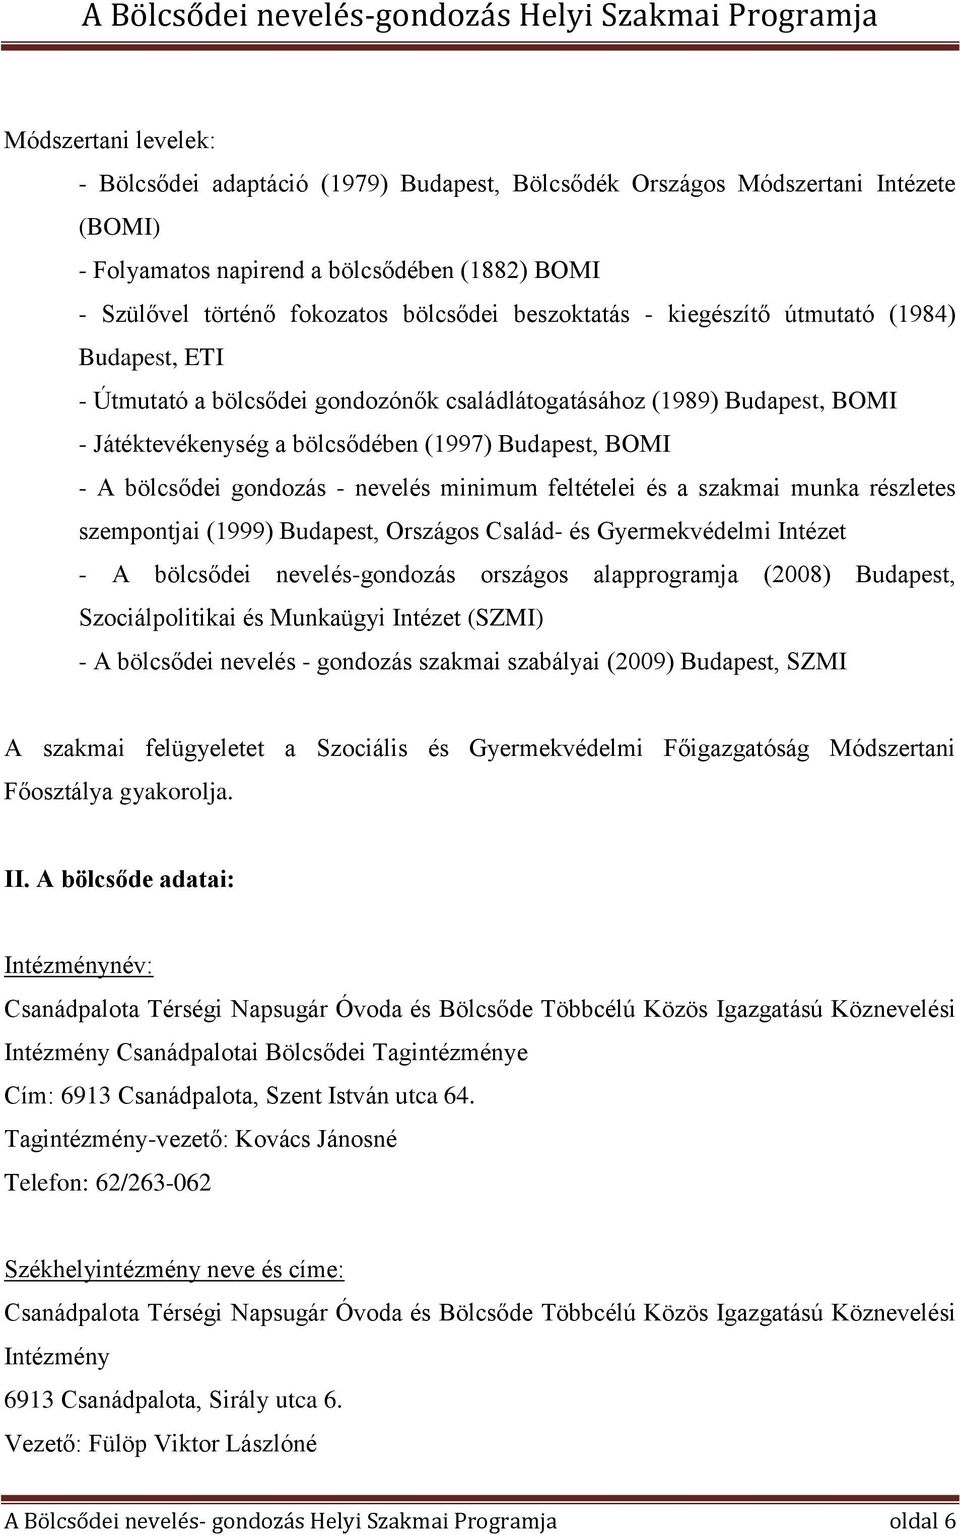 gondozás - nevelés minimum feltételei és a szakmai munka részletes szempontjai (1999) Budapest, Országos Család- és Gyermekvédelmi Intézet - A bölcsődei nevelés-gondozás országos alapprogramja (2008)